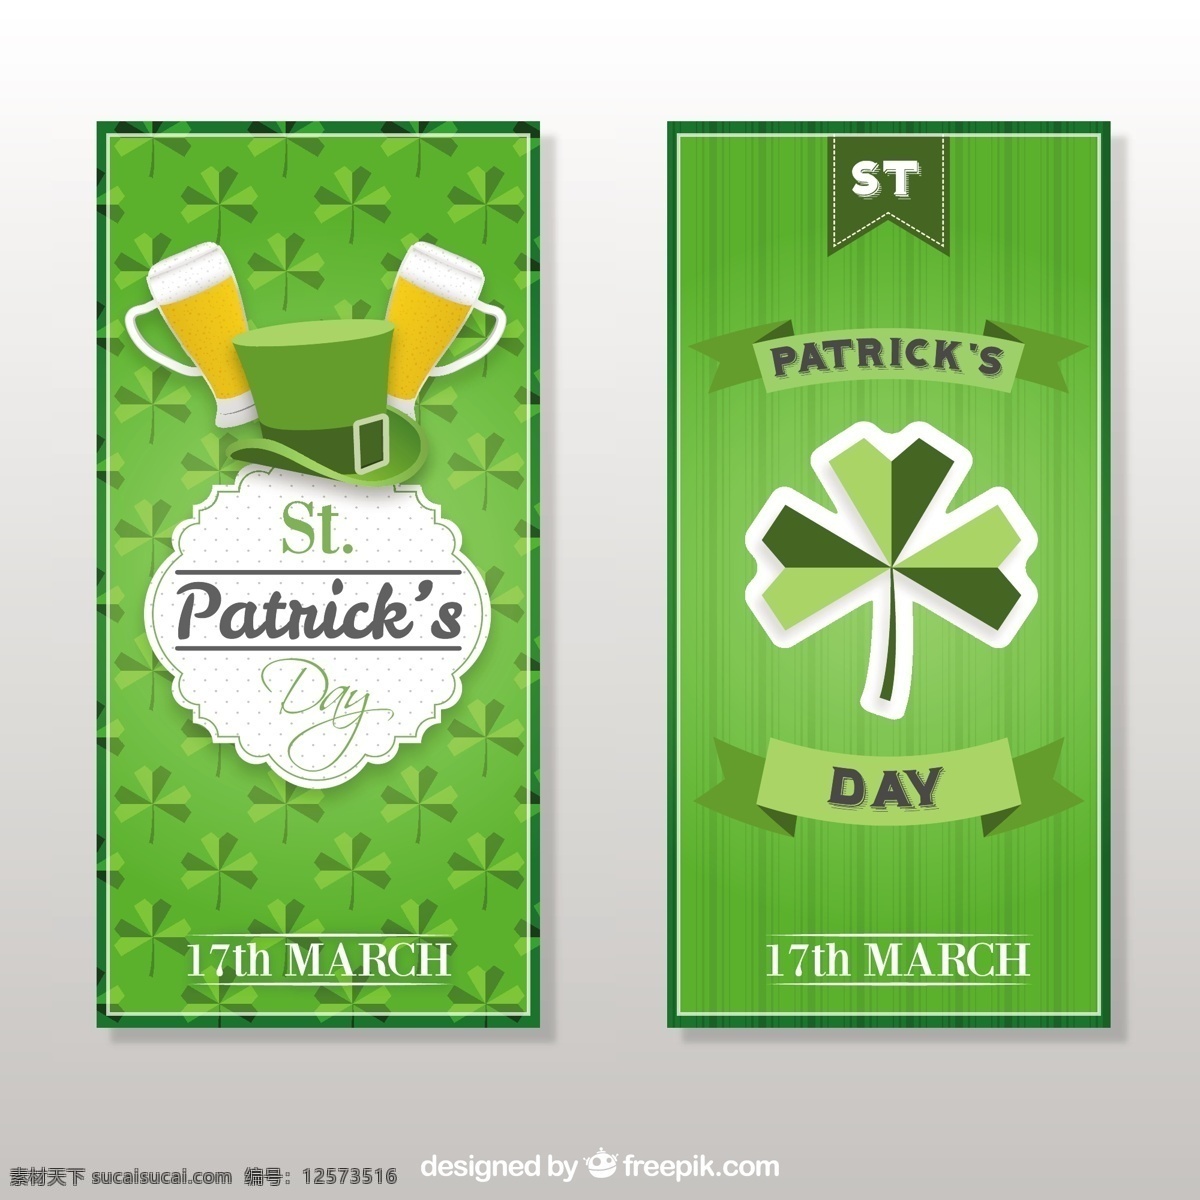 绿色 圣帕特里克 横幅 集 旗帜 图案 聚会 啤酒 春天 庆典 帽子 度假 三叶草 文化 凯尔特人 爱尔兰人 传统 月 幸运 方帽 白色